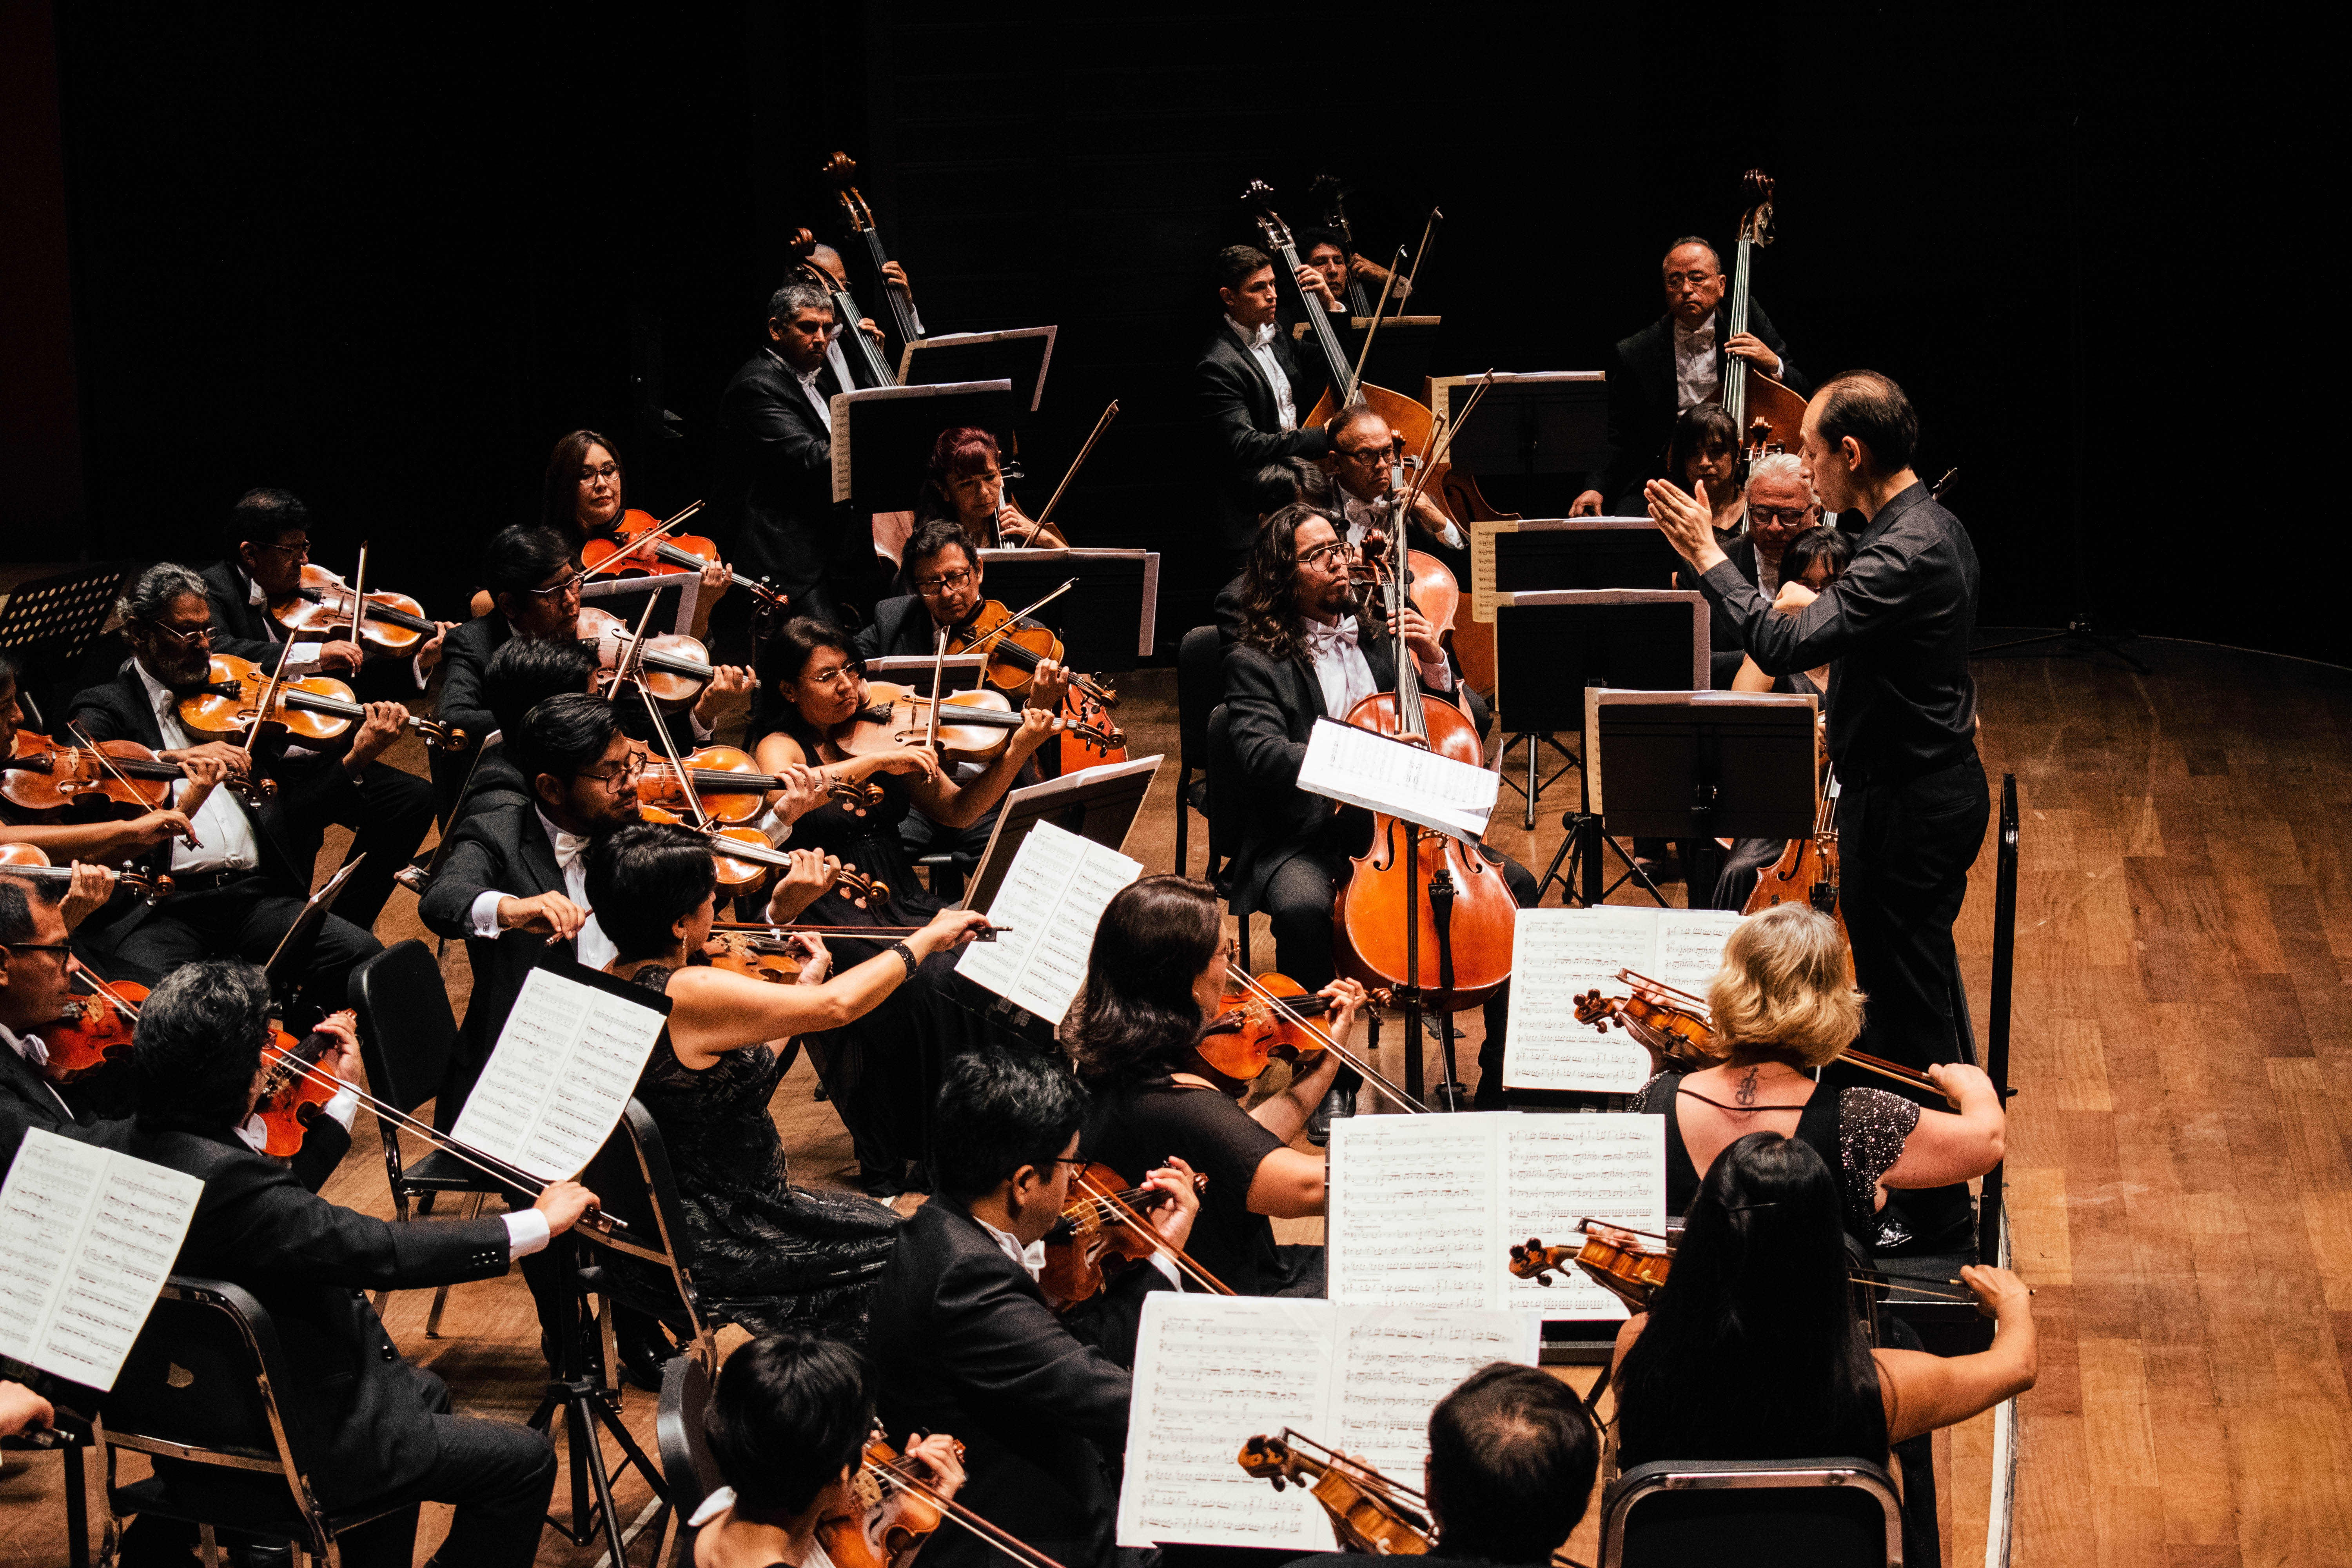 Ministerio de Cultura presentó el libro “80 años. Orquesta Sinfónica Nacional del Perú” 